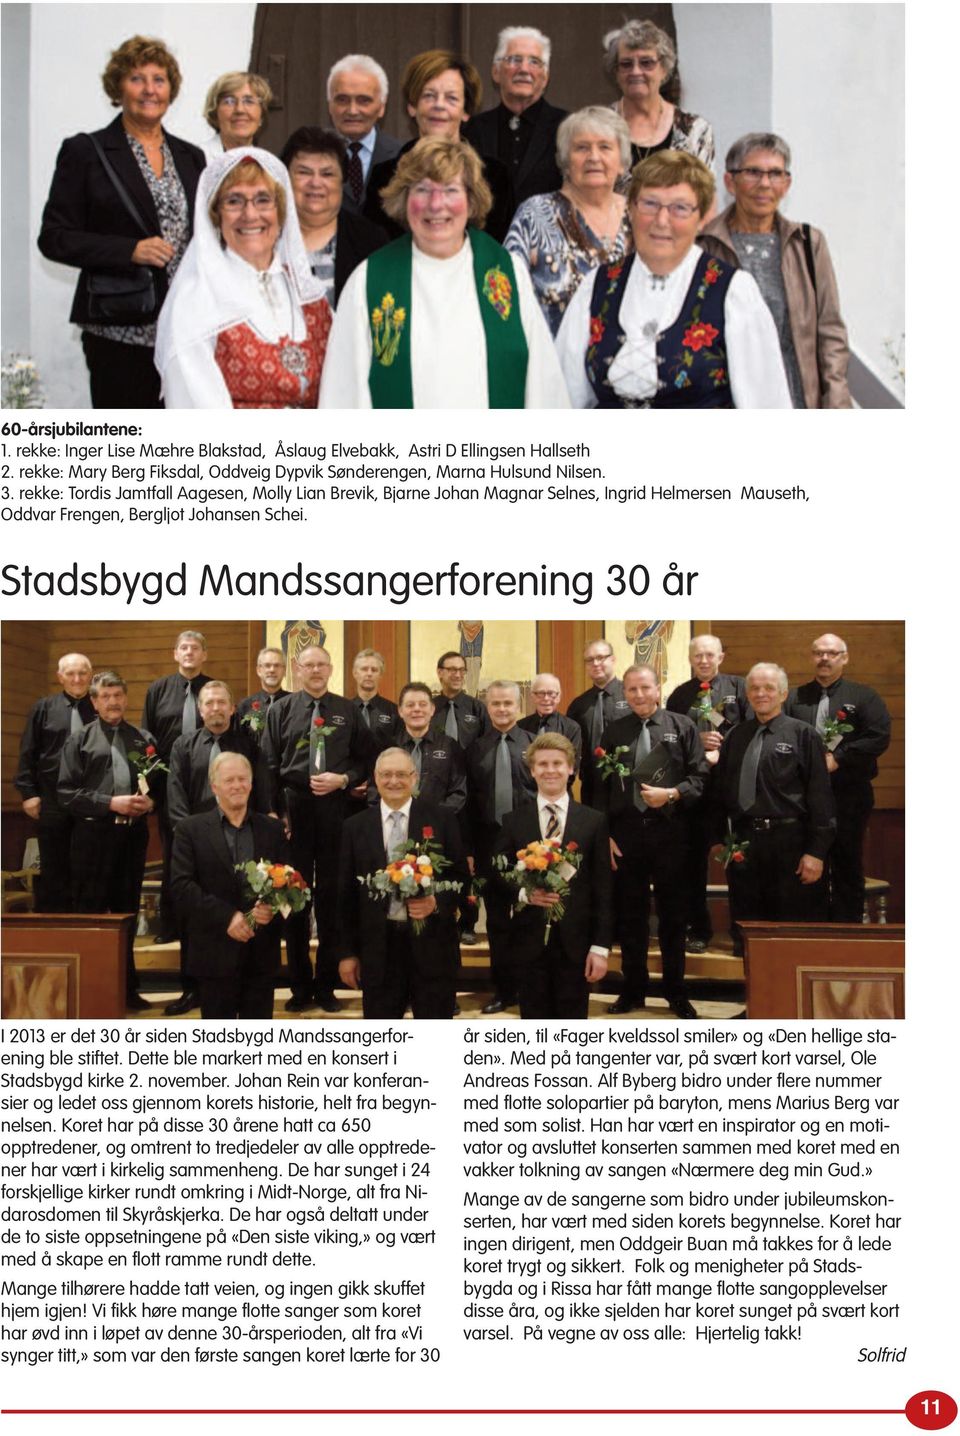 Stadsbygd Mandssangerforening 30 år I 2013 er det 30 år siden Stadsbygd Mandssangerforening ble stiftet. Dette ble markert med en konsert i Stadsbygd kirke 2. november.